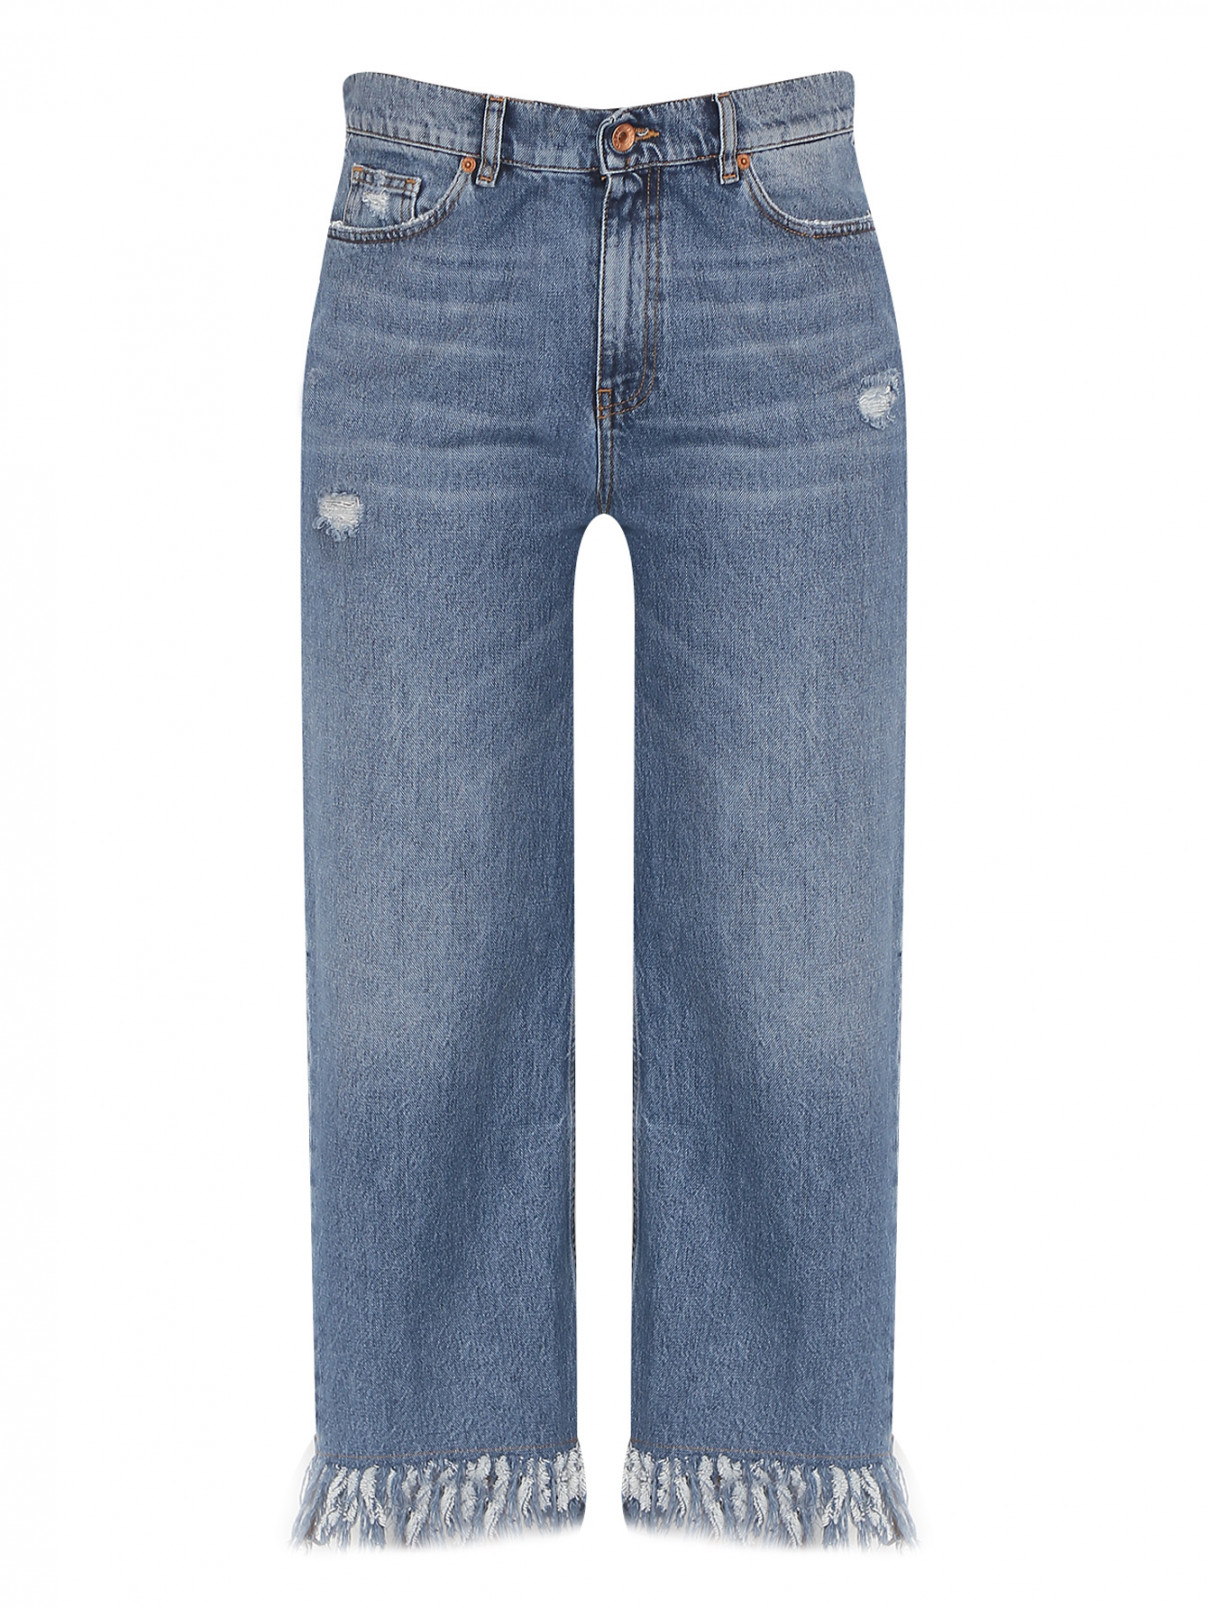 Укороченные джинсы с бахромой Marina Rinaldi  –  Общий вид  – Цвет:  Синий